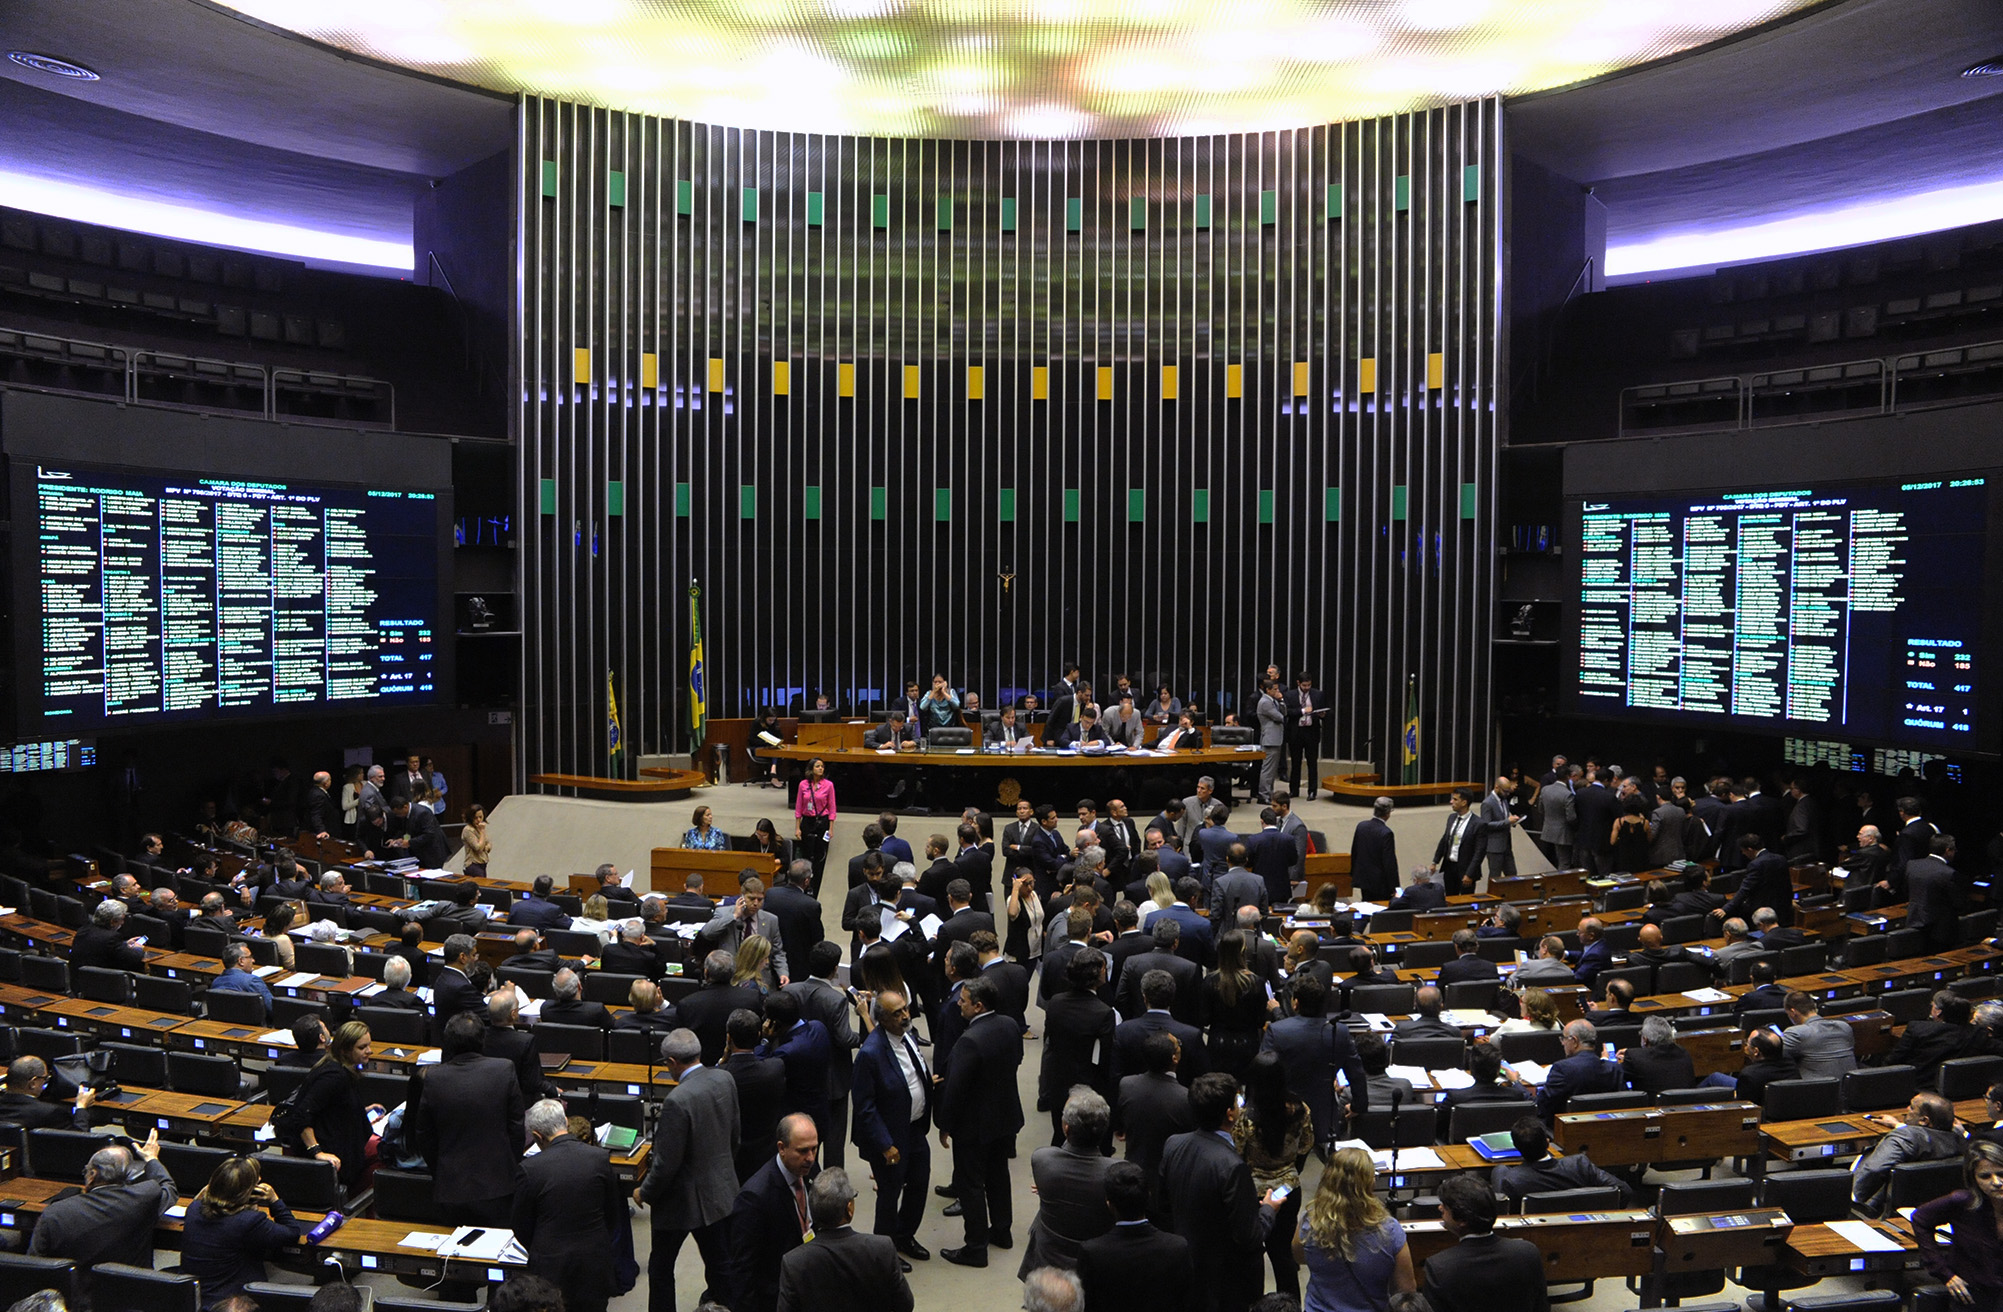 Na calada da noite, deputados concluem votação da MP que dá R$ 1 trilhão às petroleiras estrangeiras